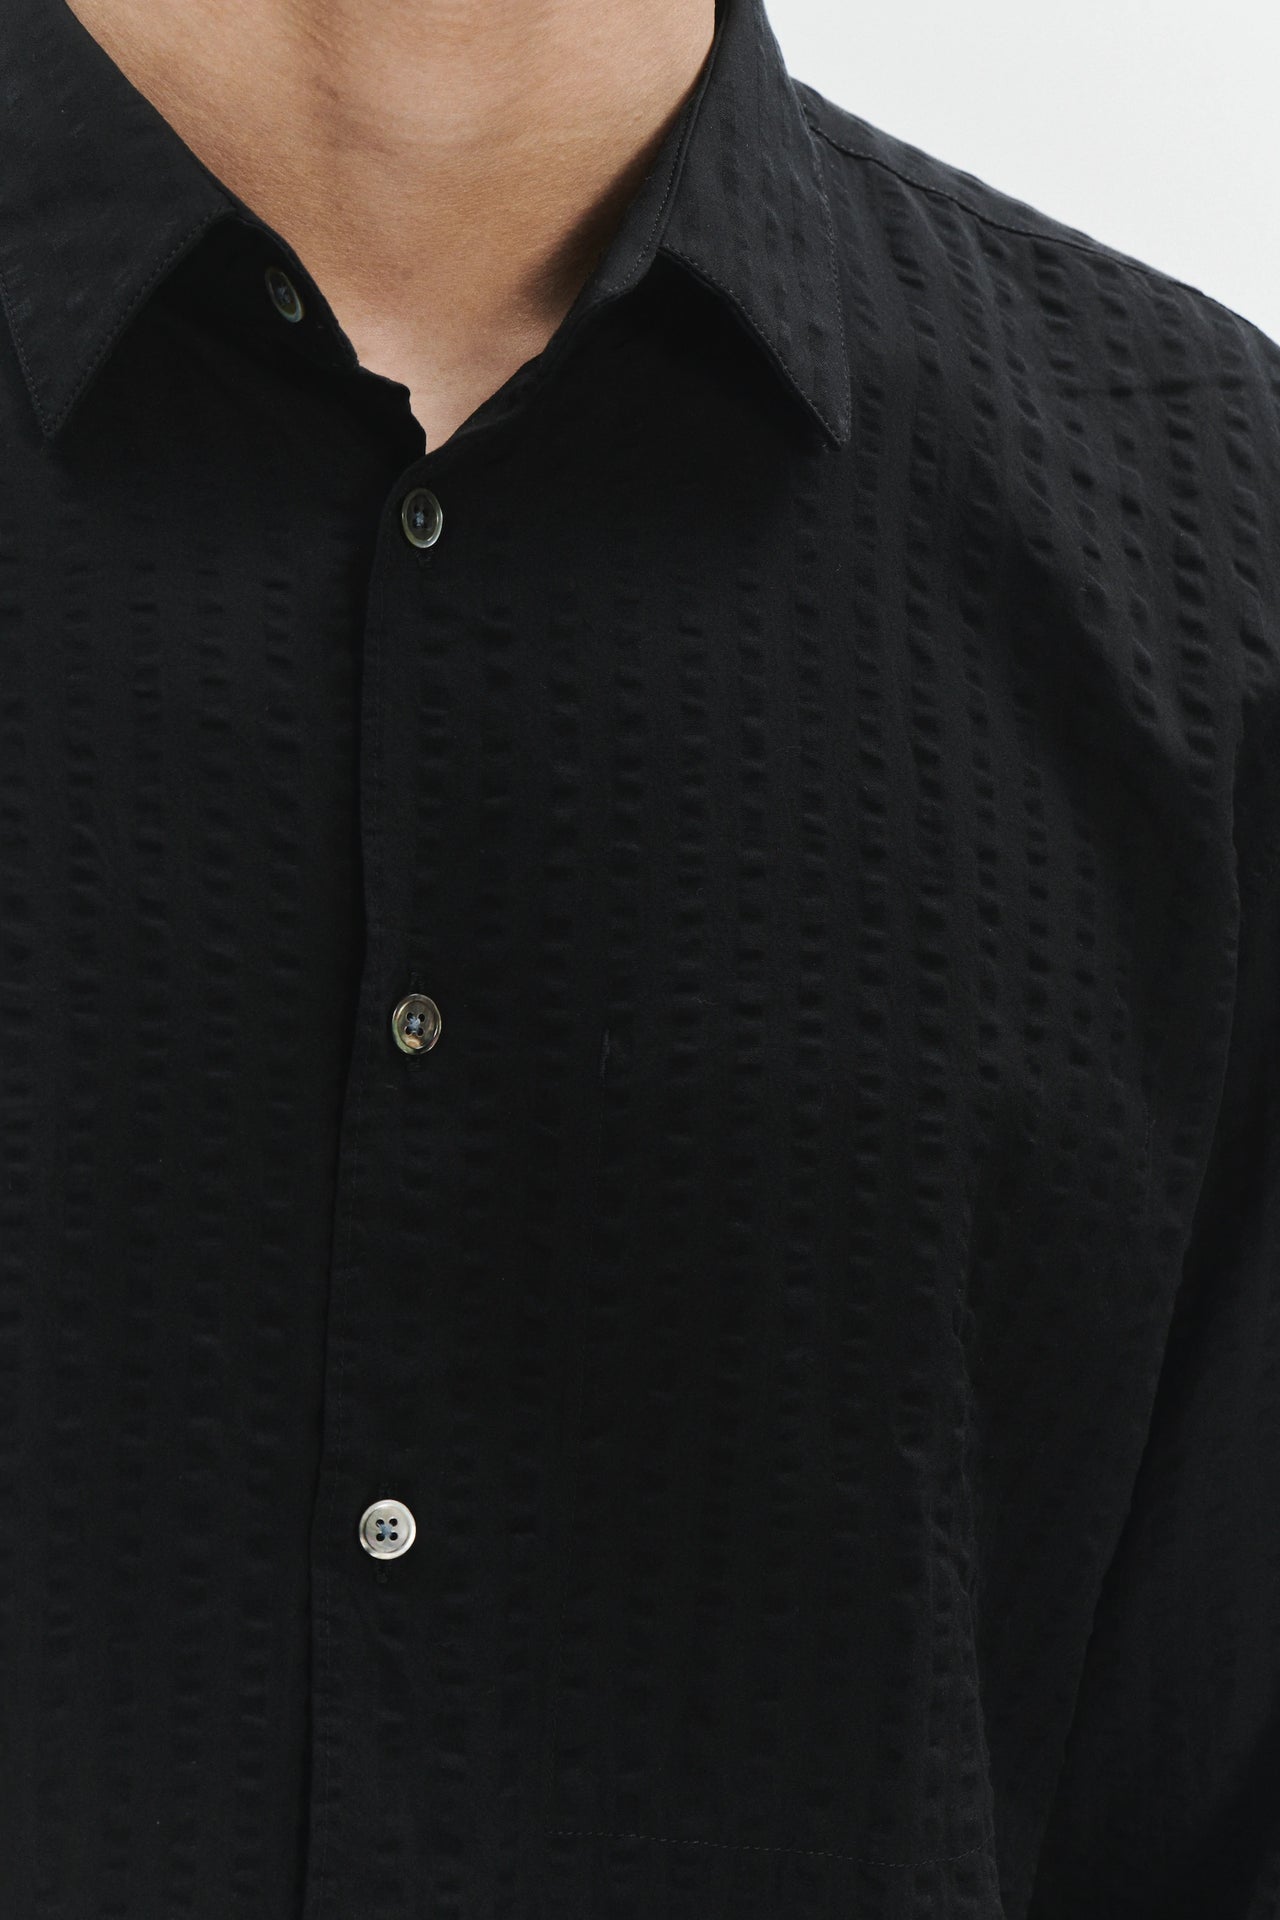 Feel Good Shirt in Black Fine Portuguese Tencel Seersucker